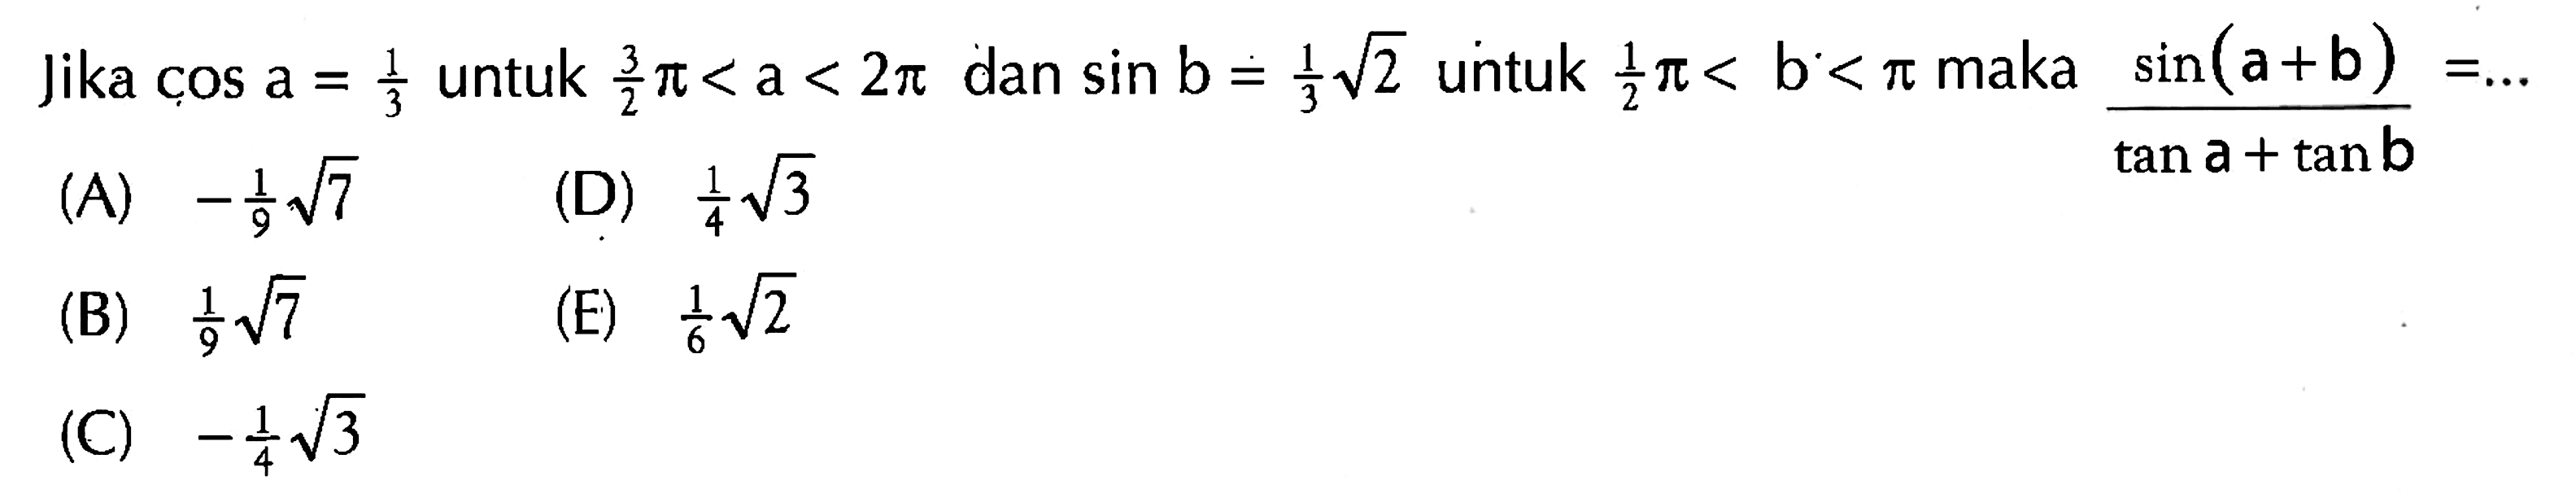 Jika cos a=1/3 untuk 3/2 pi<a<2pi dan sin b=1/3 akar(2) untuk 1/2 pi<b<pi maka (sin (a+b))/(tan a+tan b)= .... 